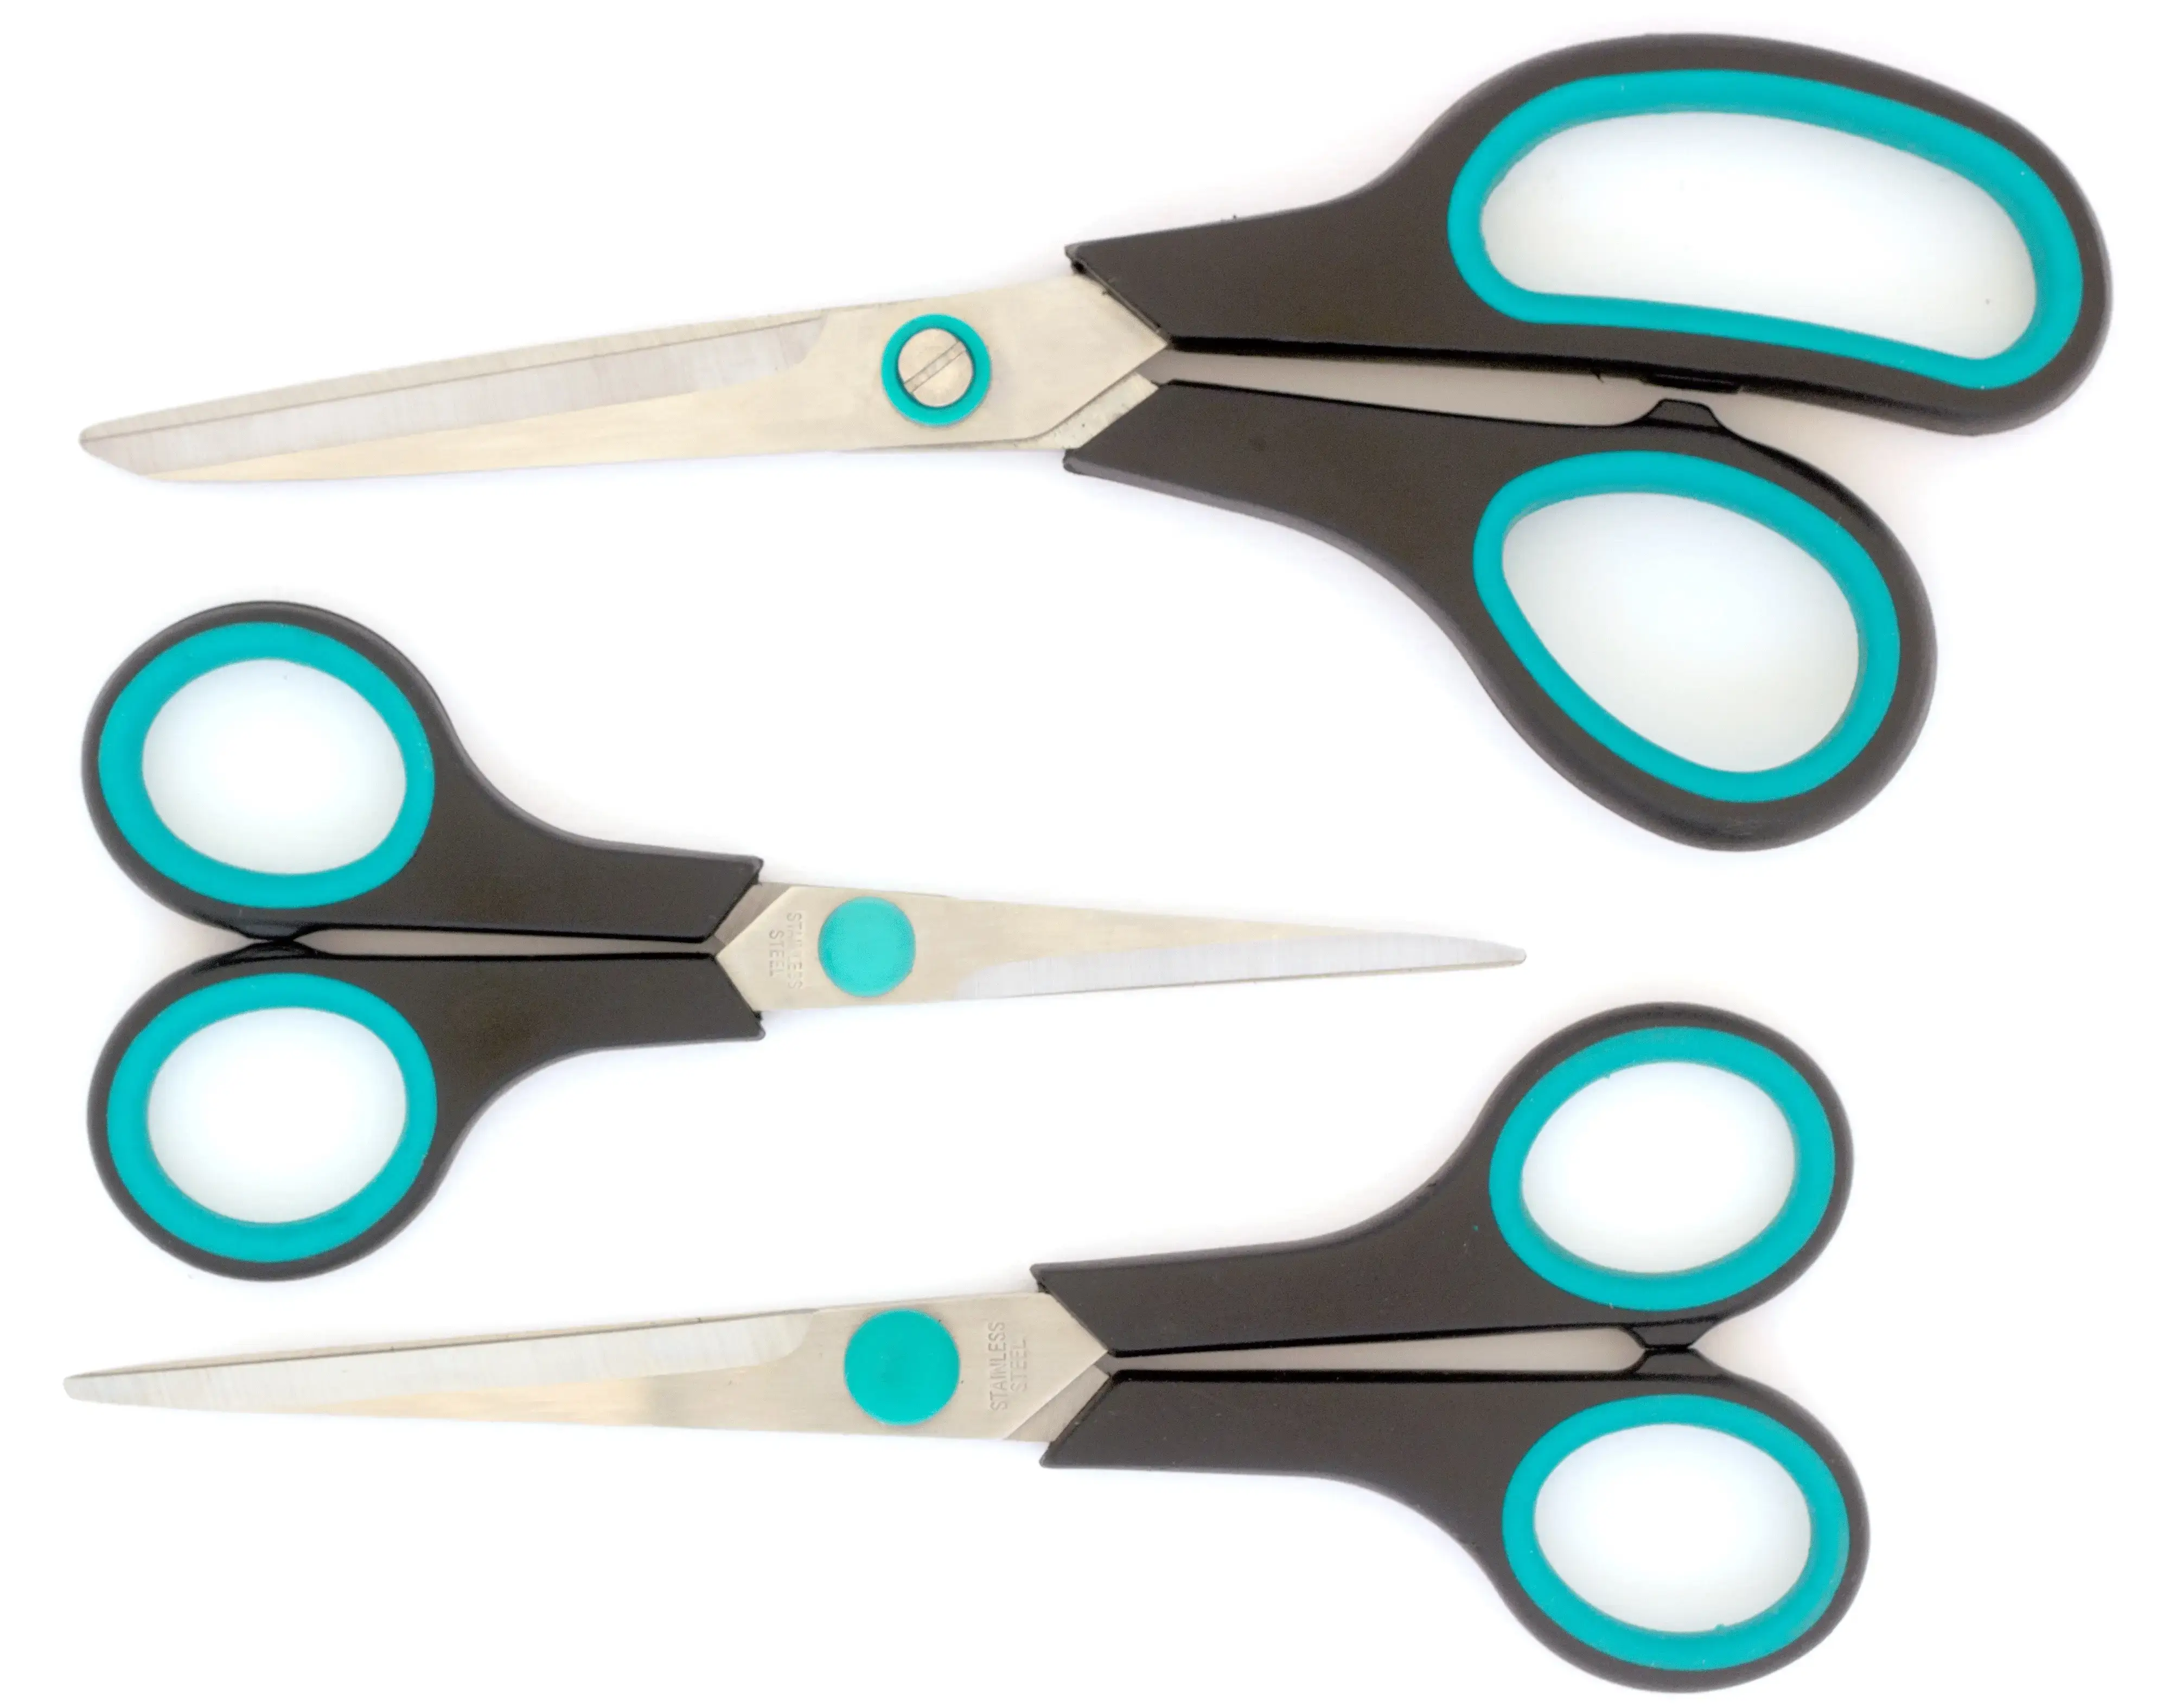 Excellent household scissors set 3 pieces